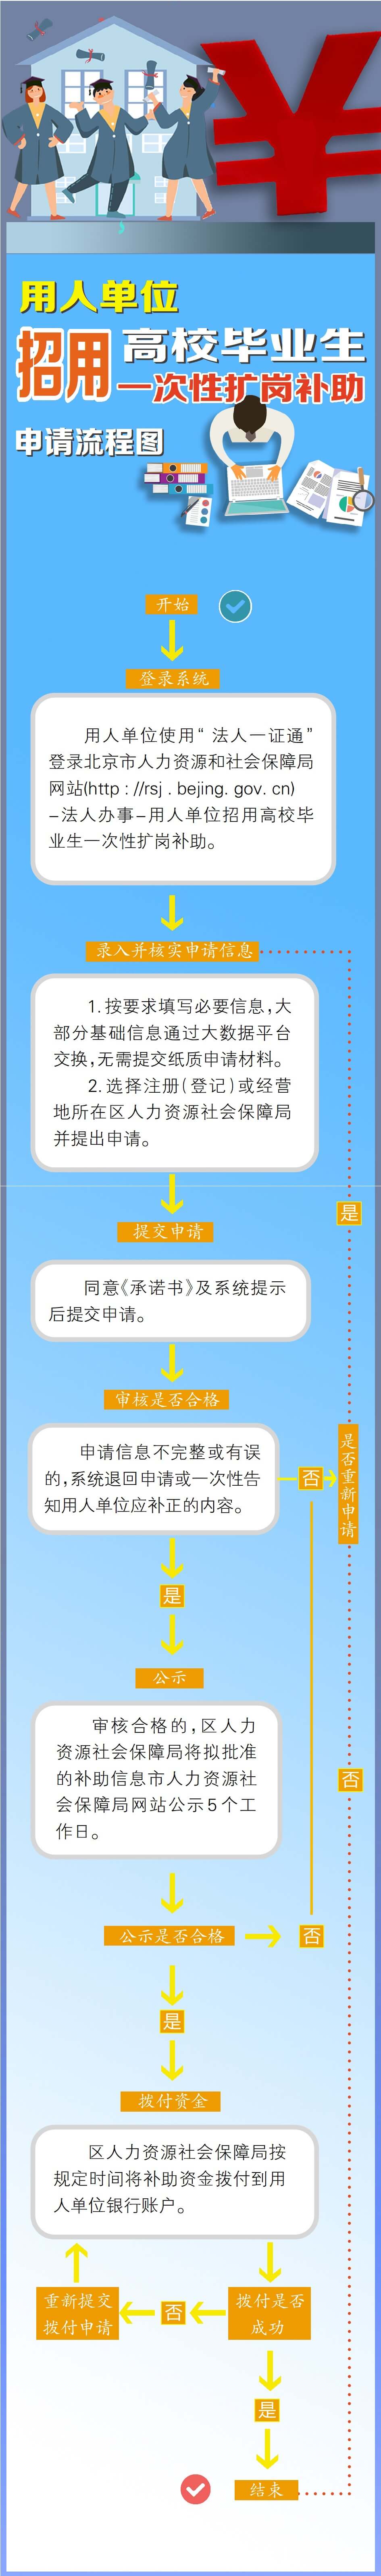 北京市一次性扩岗补助申请流程